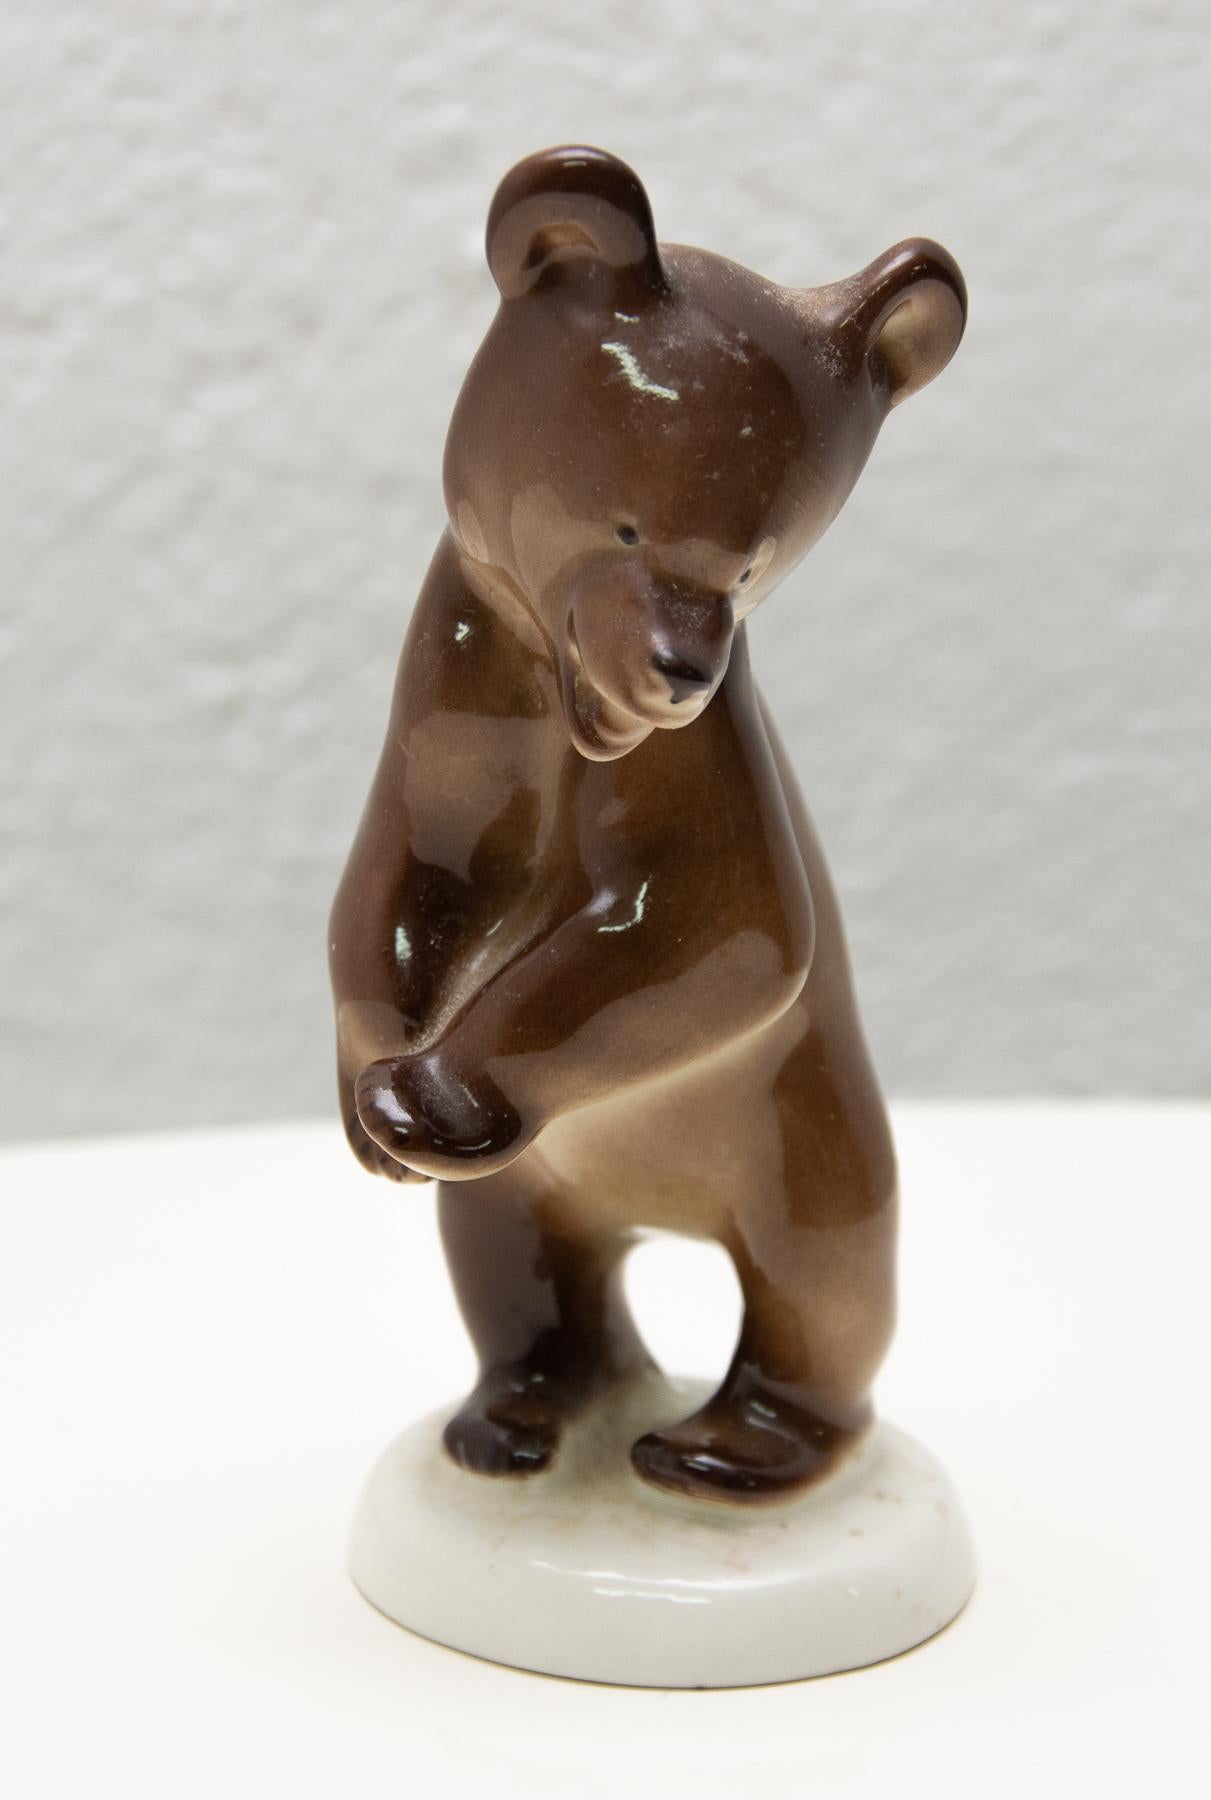 Sculpture en céramique représentant un ours, réalisée par la société Lomonosov dans l'ancienne URSS dans les années 1970. La sculpture est réalisée en céramique.
La statuette est en très bon état Vintage.